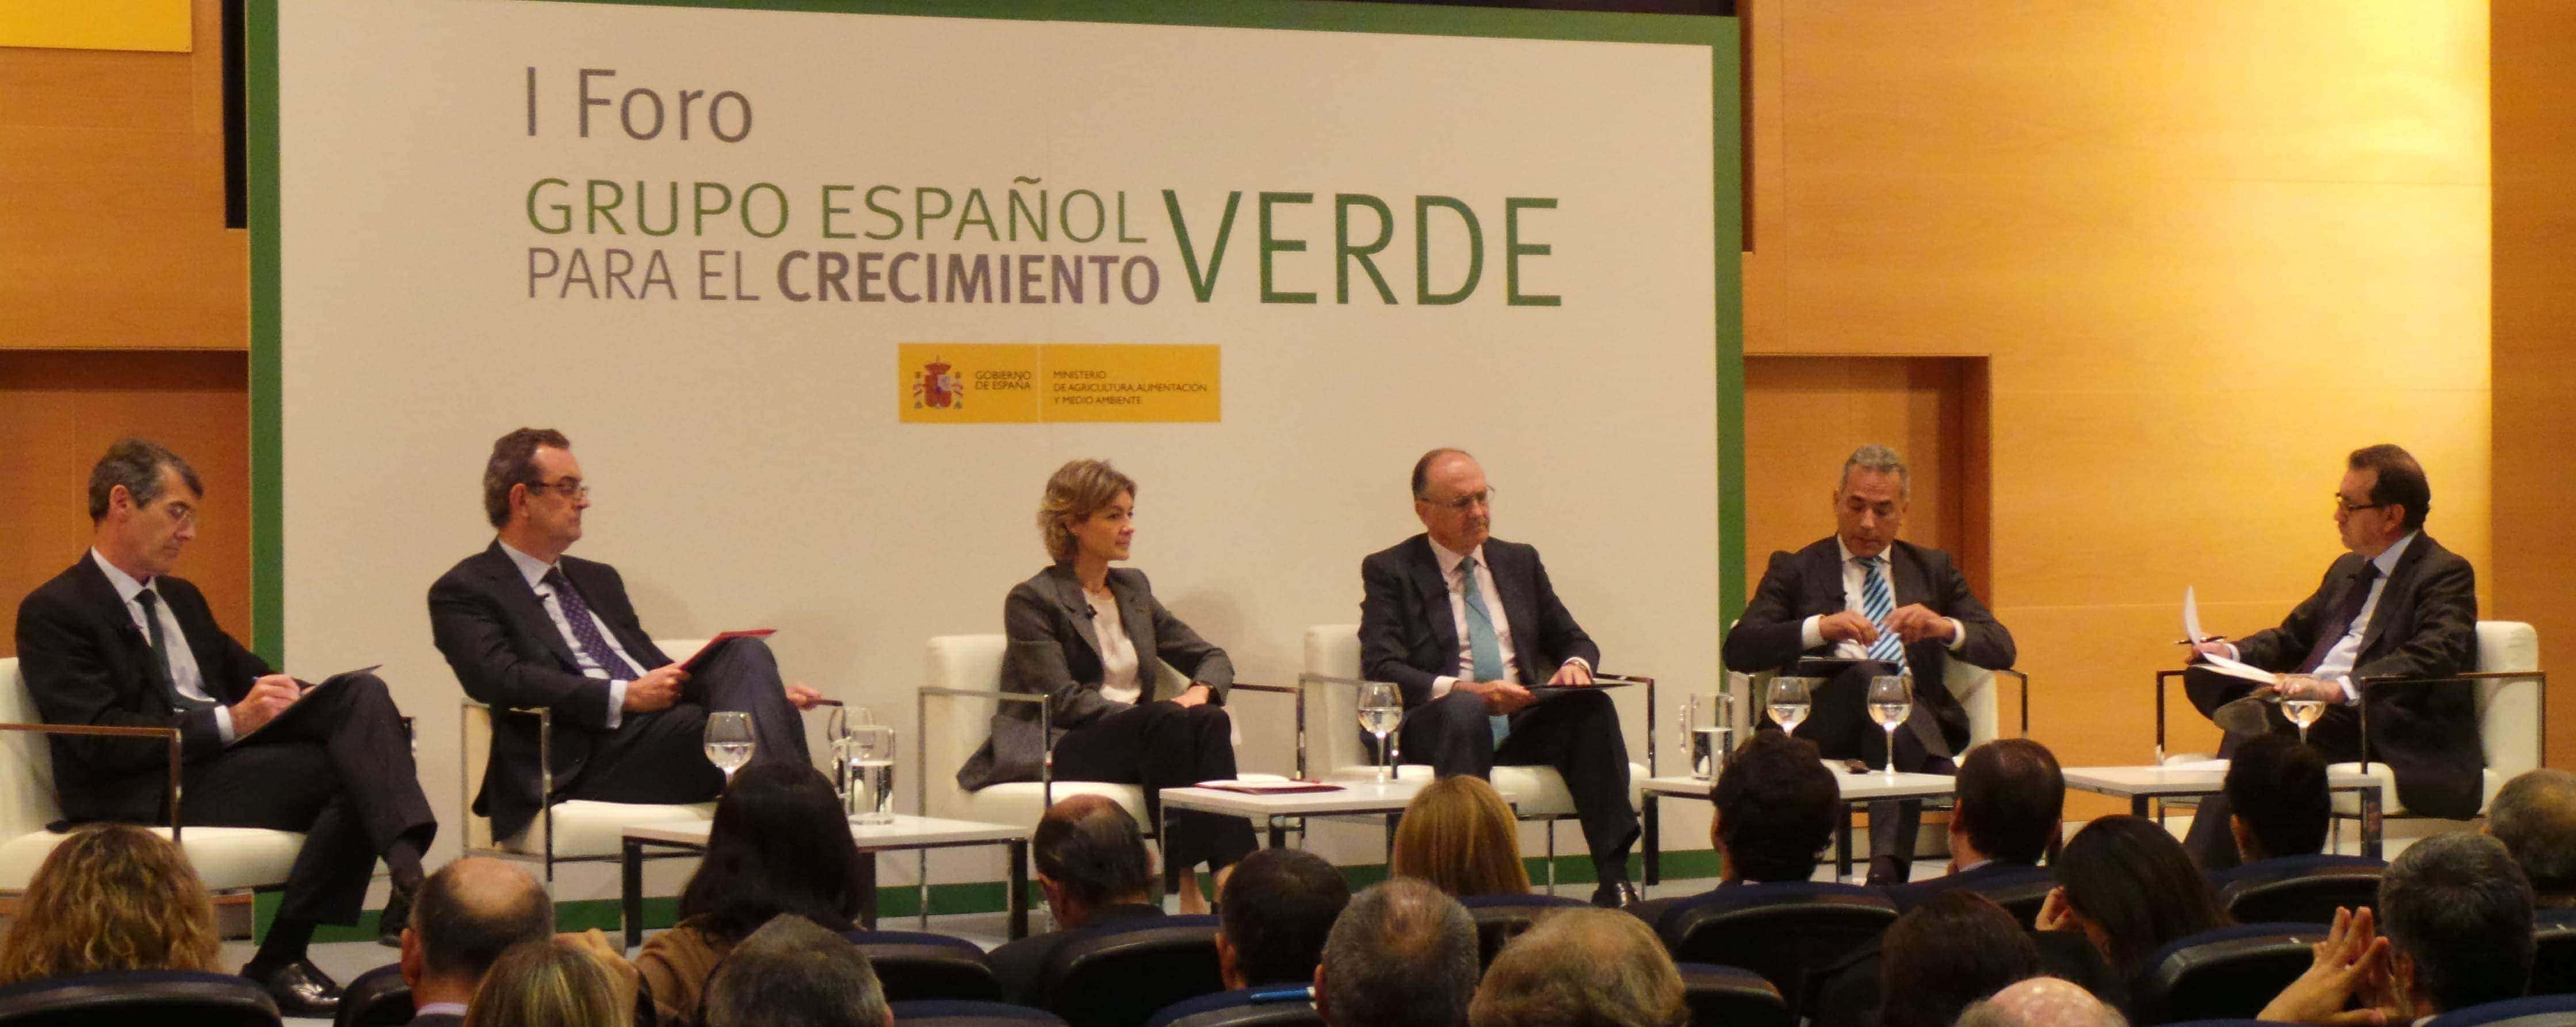 grupo español de crecimiento verde cambio climatico